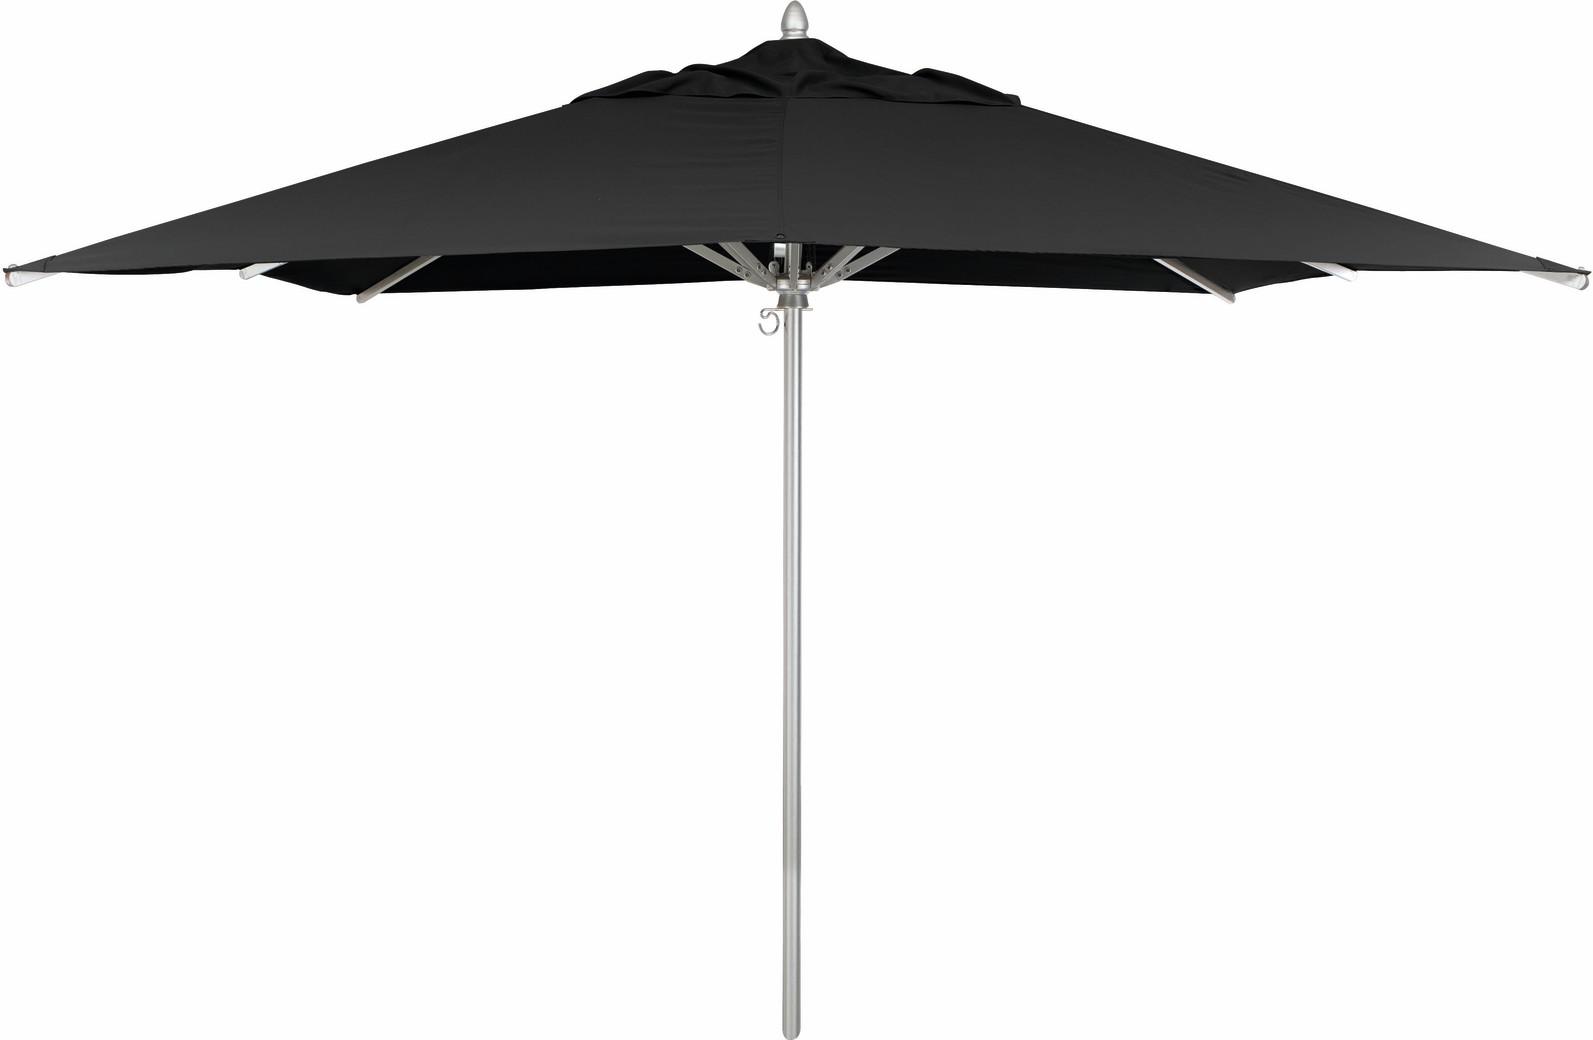 Umbrella 300x300